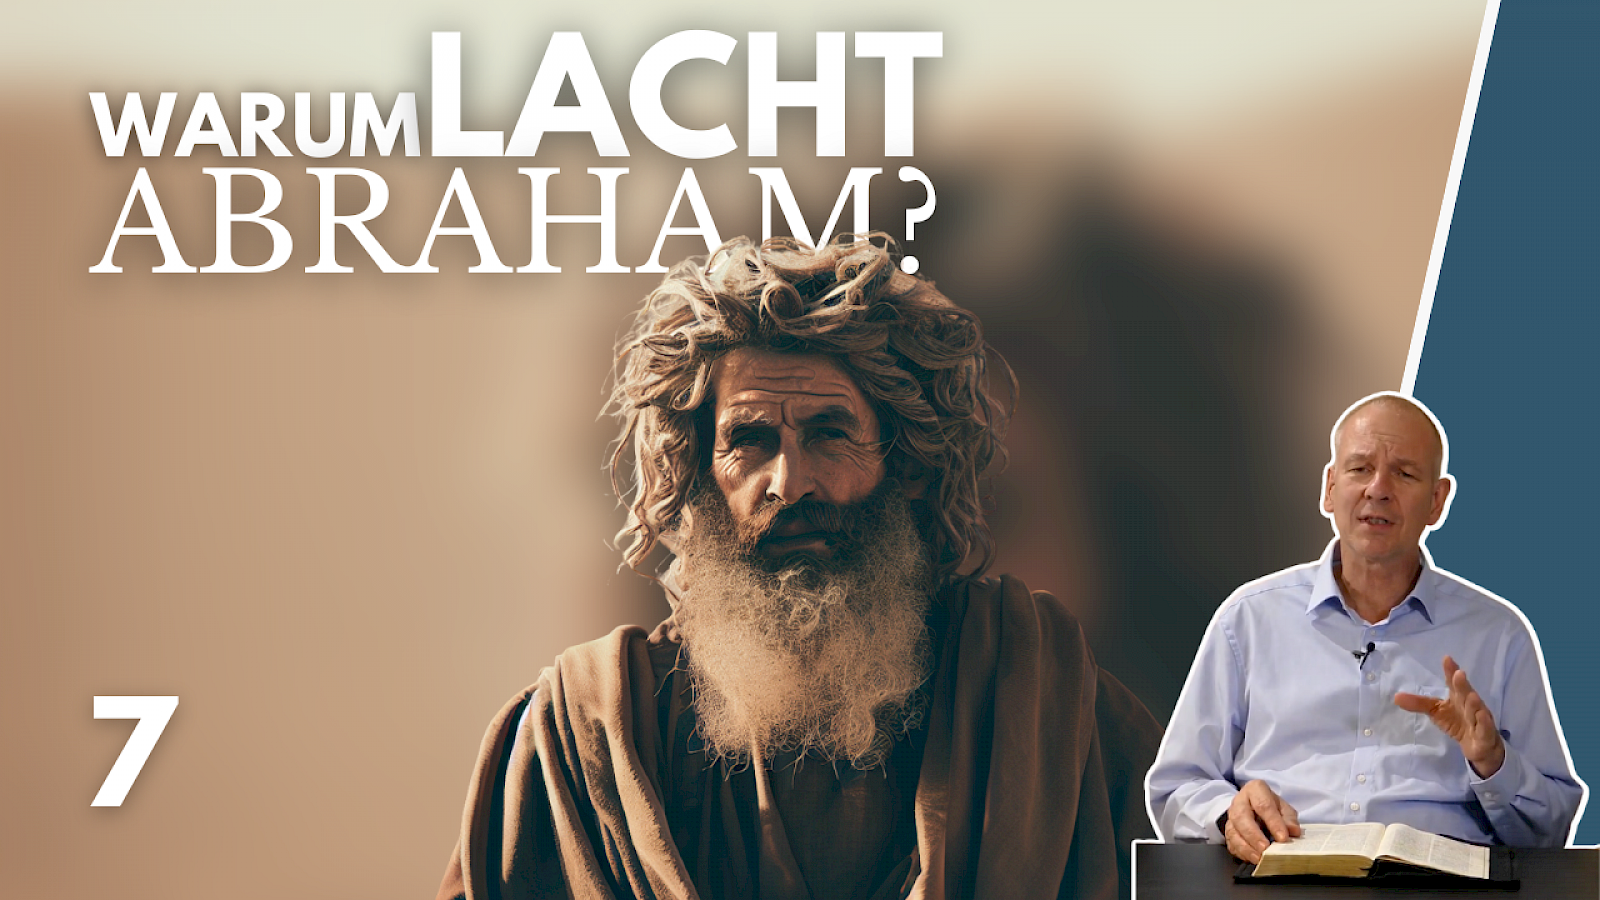 Warum lacht Abraham?